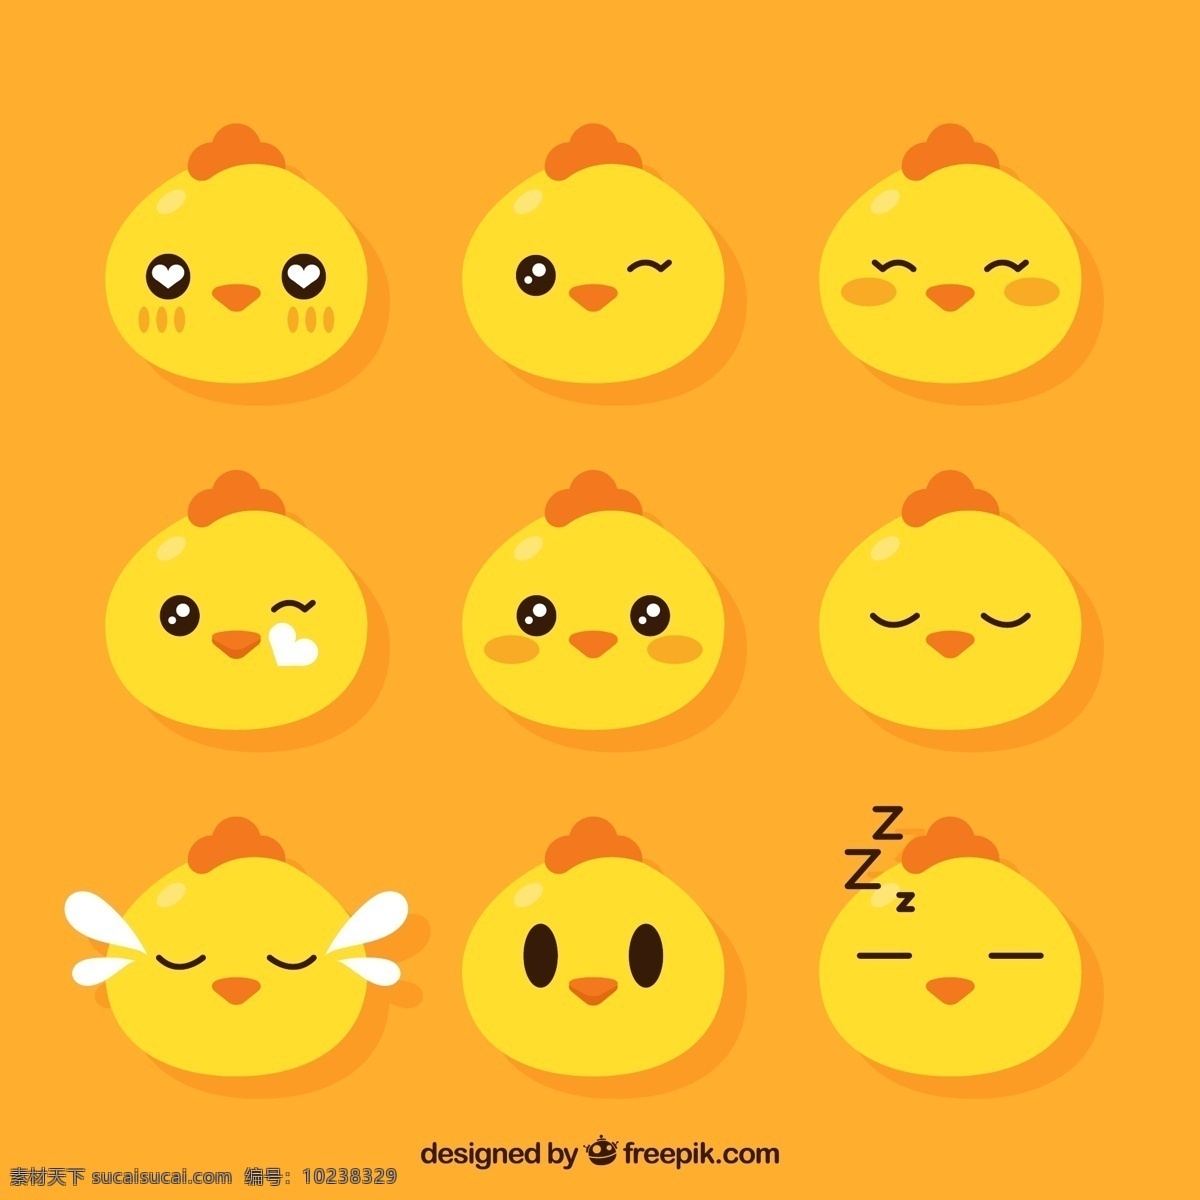 组 黄色 可爱 小鸡 表情 包 卡通 卡哇伊 矢量素材 动物 小动物 创意设计 简约 创意 元素 生物元素 动物元素